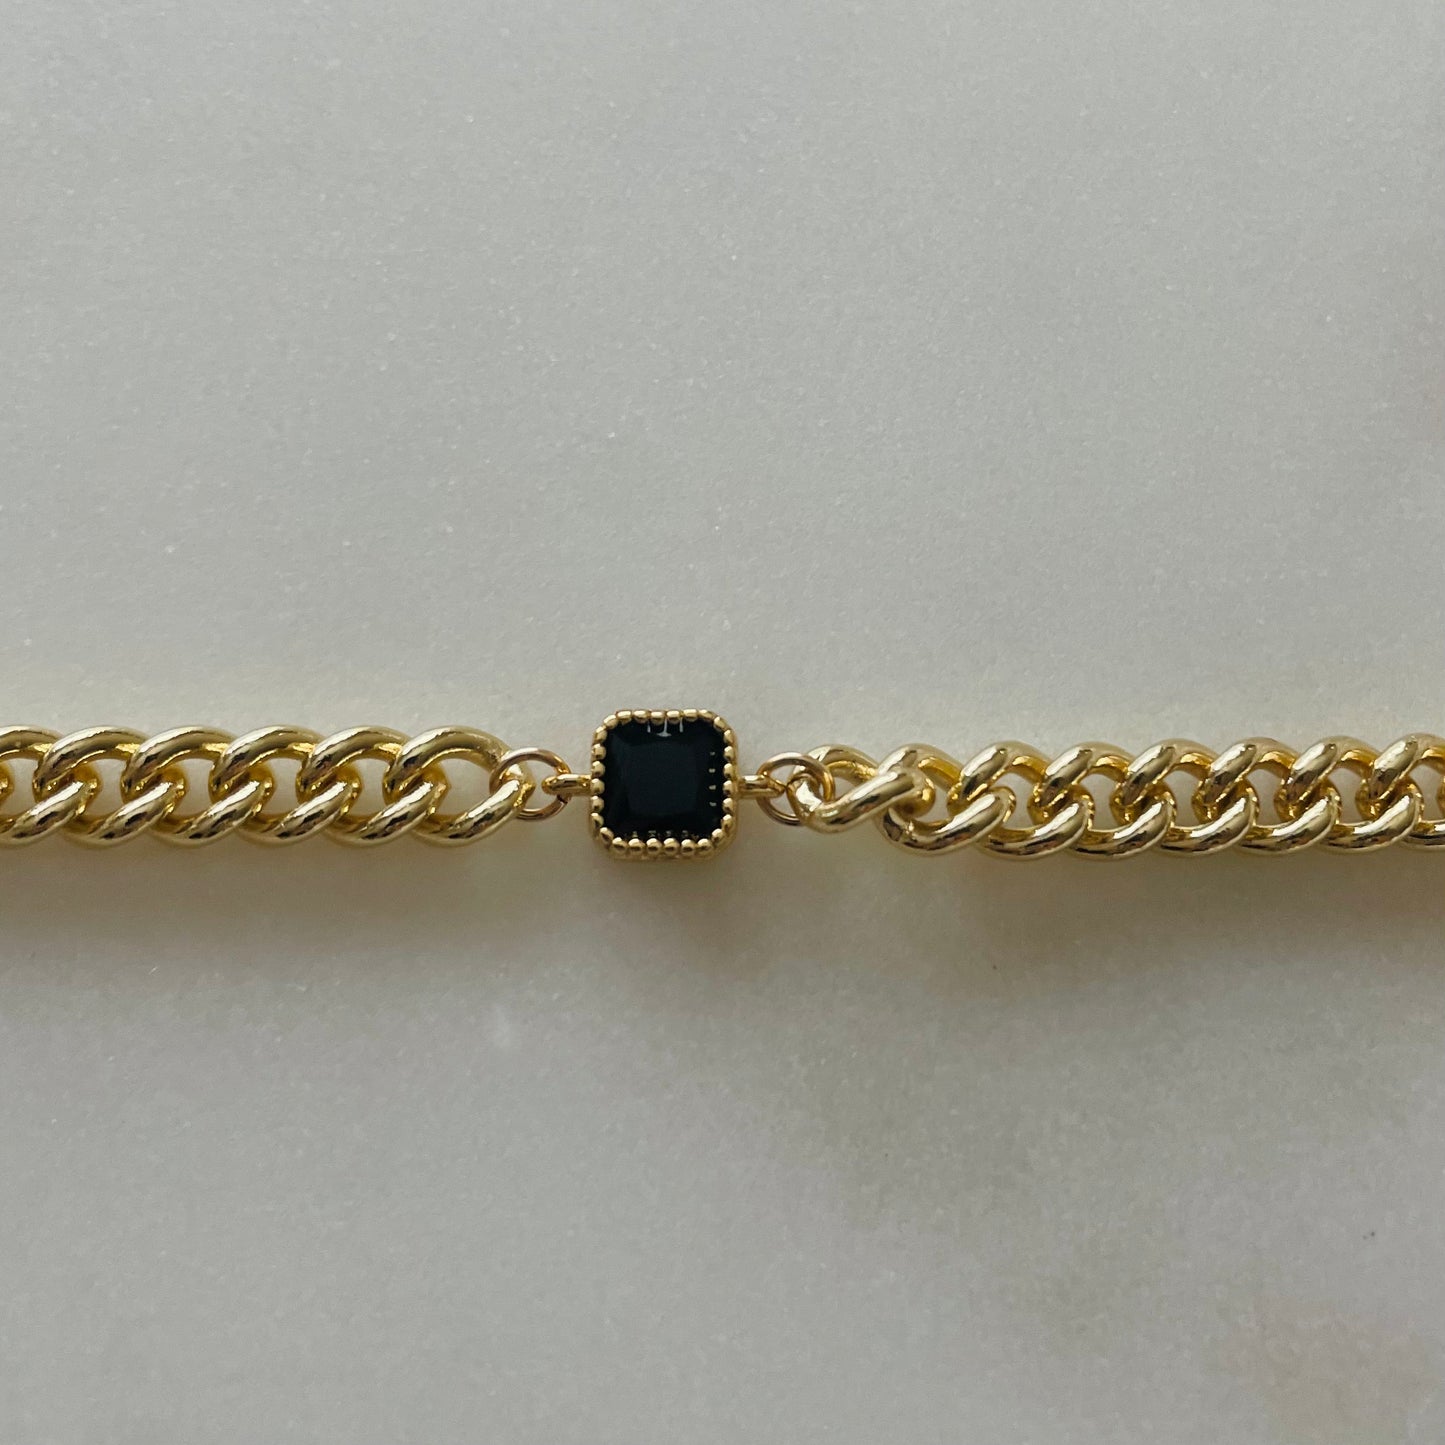 NightBird Black Gem Chain Necklace